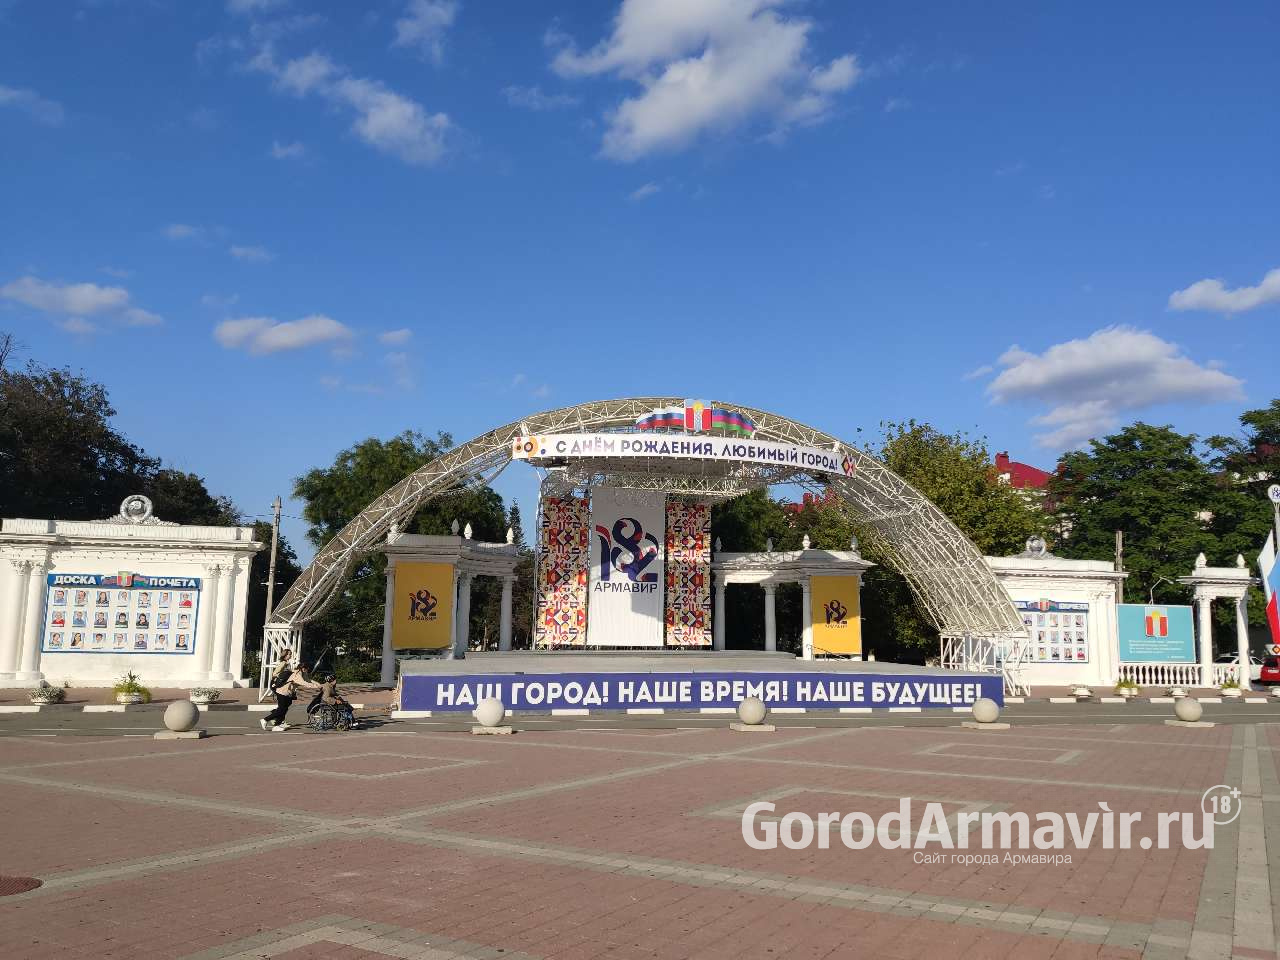 Ко Дню города в Армавире установят демонстрационные конструкции и украсят сцену 